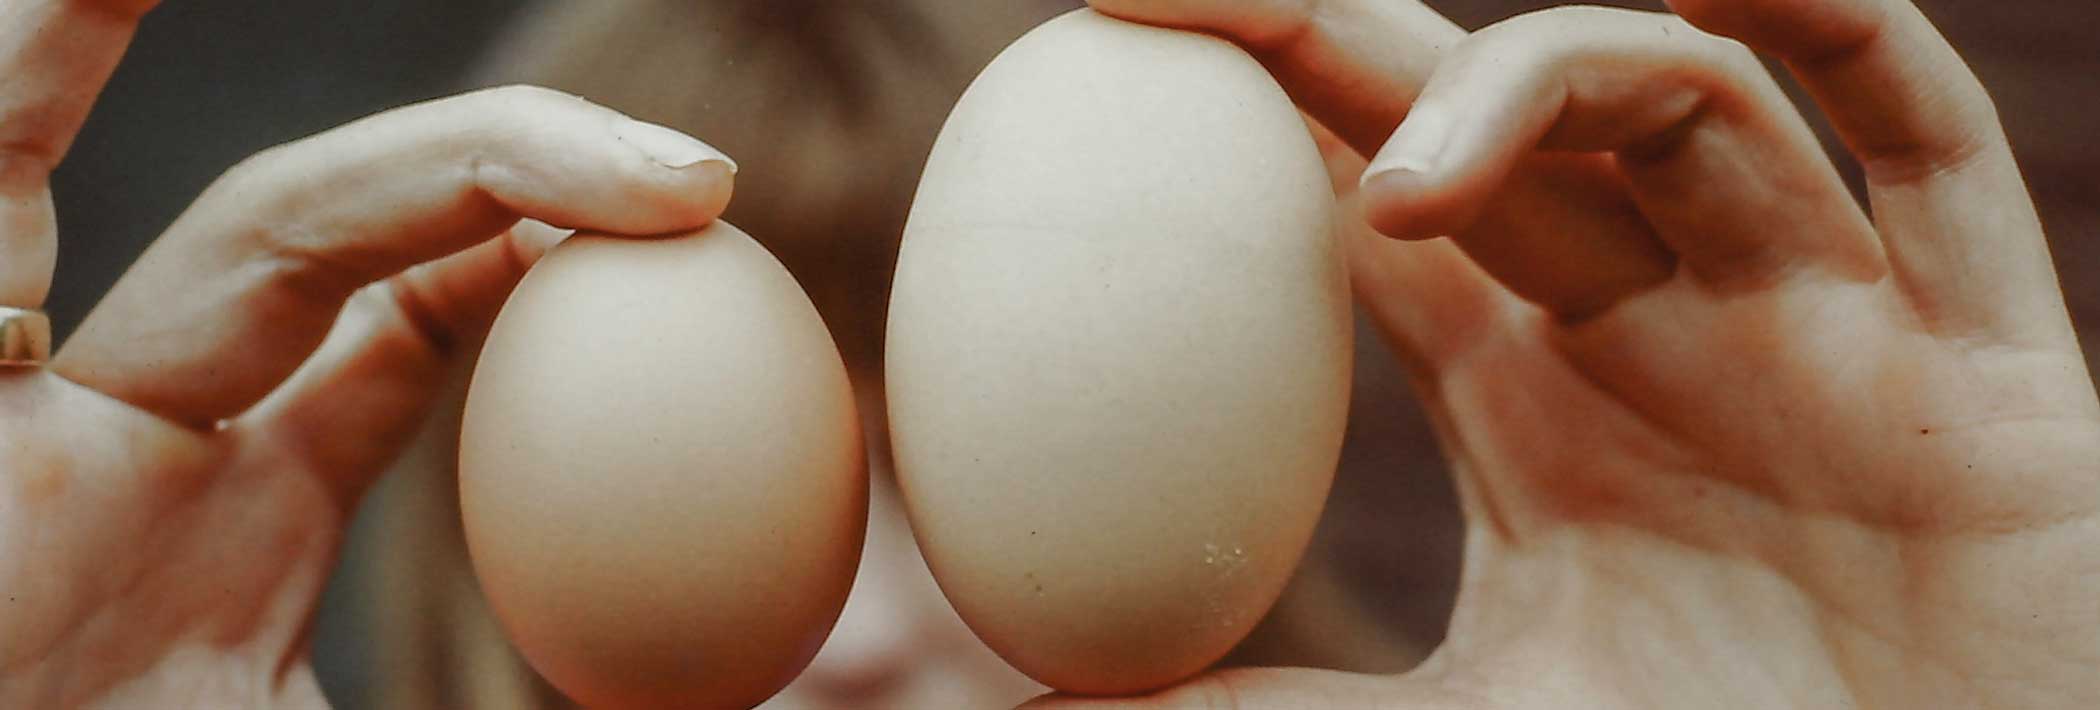 Vergleich von zwei verschieden grossen Eiern